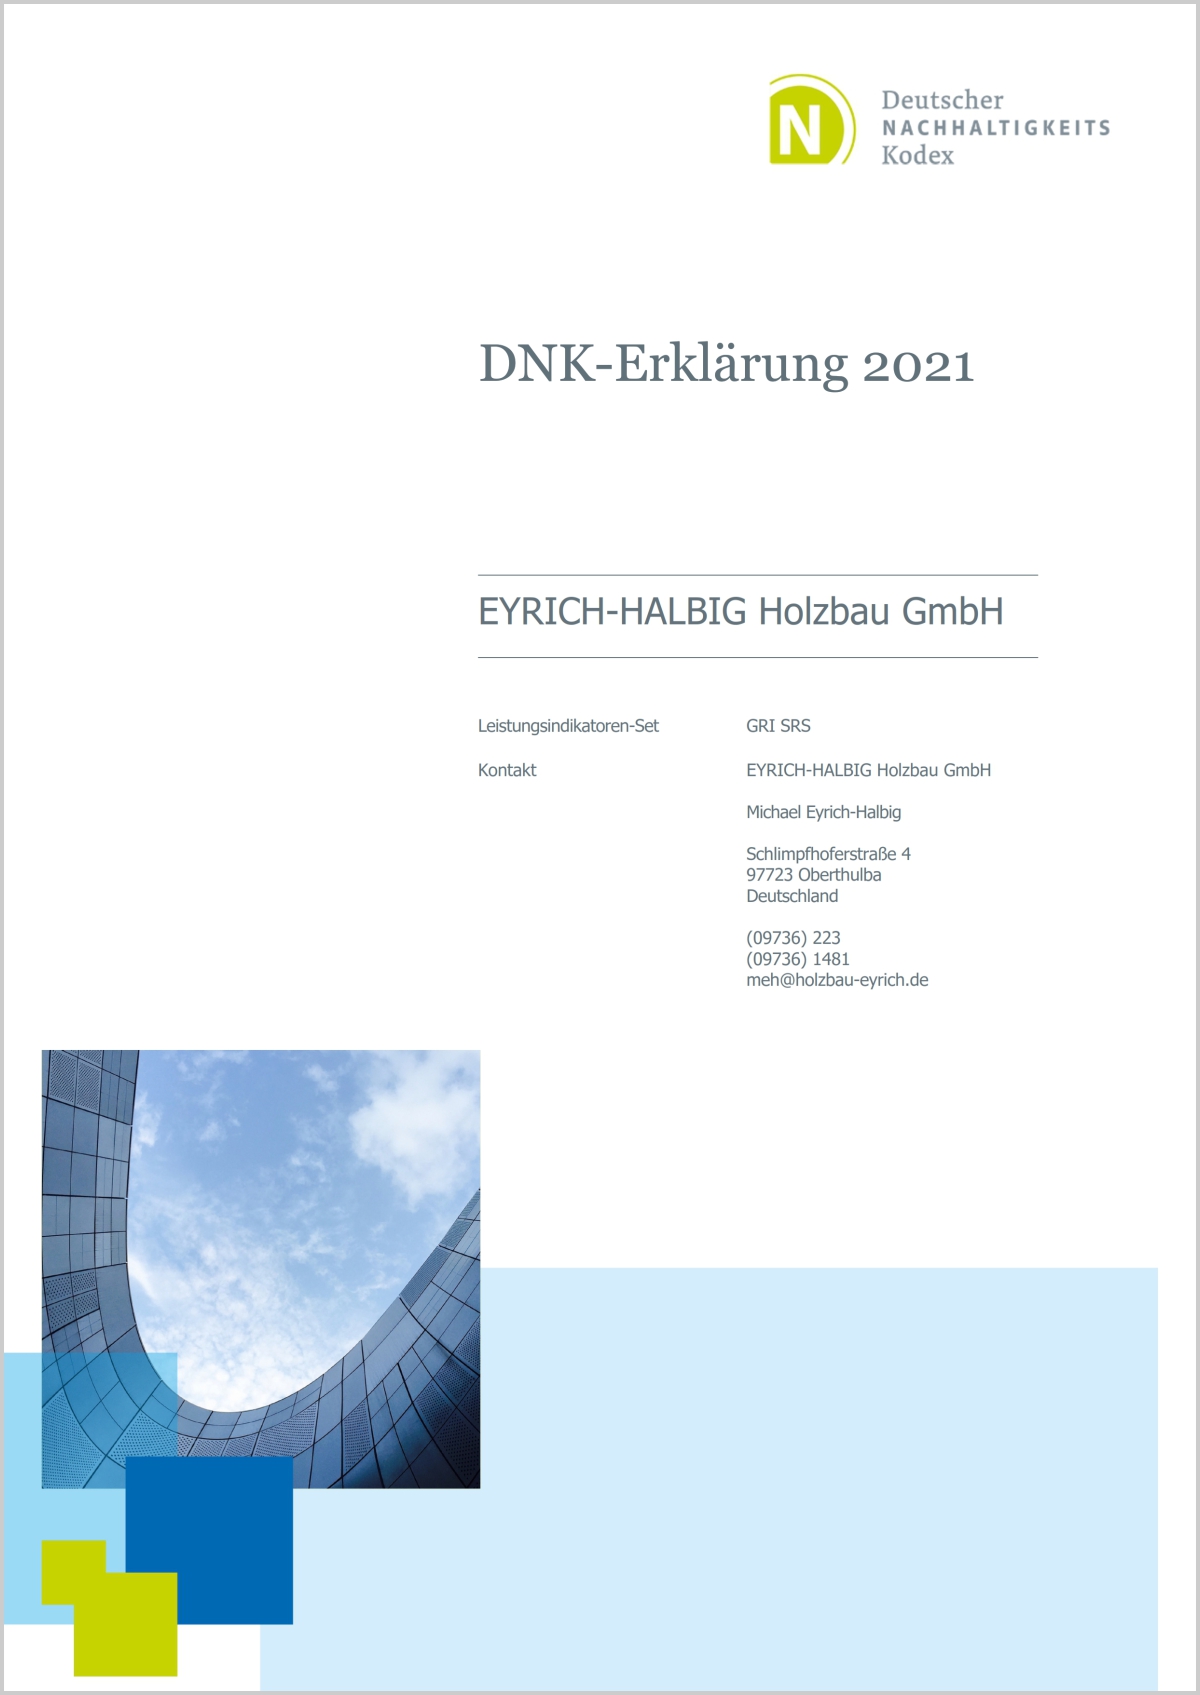 Quelle: https://www.holzbaueyrich.de/Downloads/DNK-2021-EYRICH-HALBIG-Holzbau-GmbH.pdf